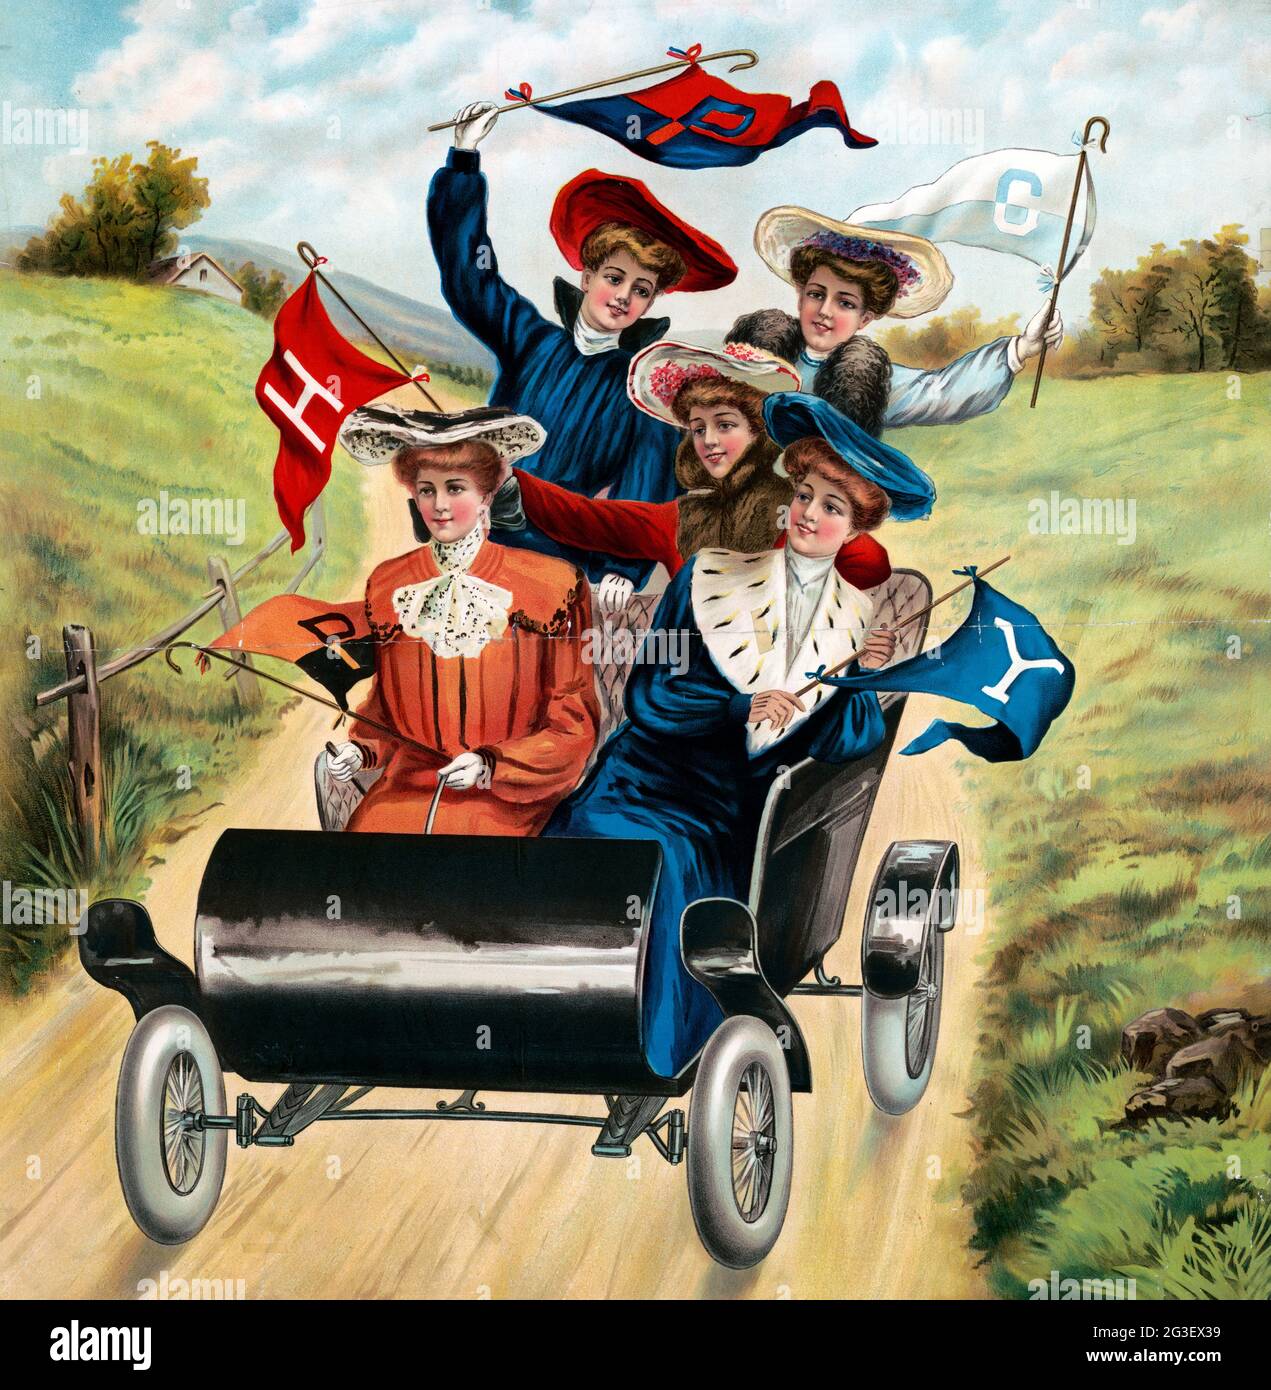 Cinq femmes conduisant dans une voiture ancienne, chacune est habillée de manière très tendance, portant des manteaux et des chapeaux, tenant des drapeaux. Banque D'Images